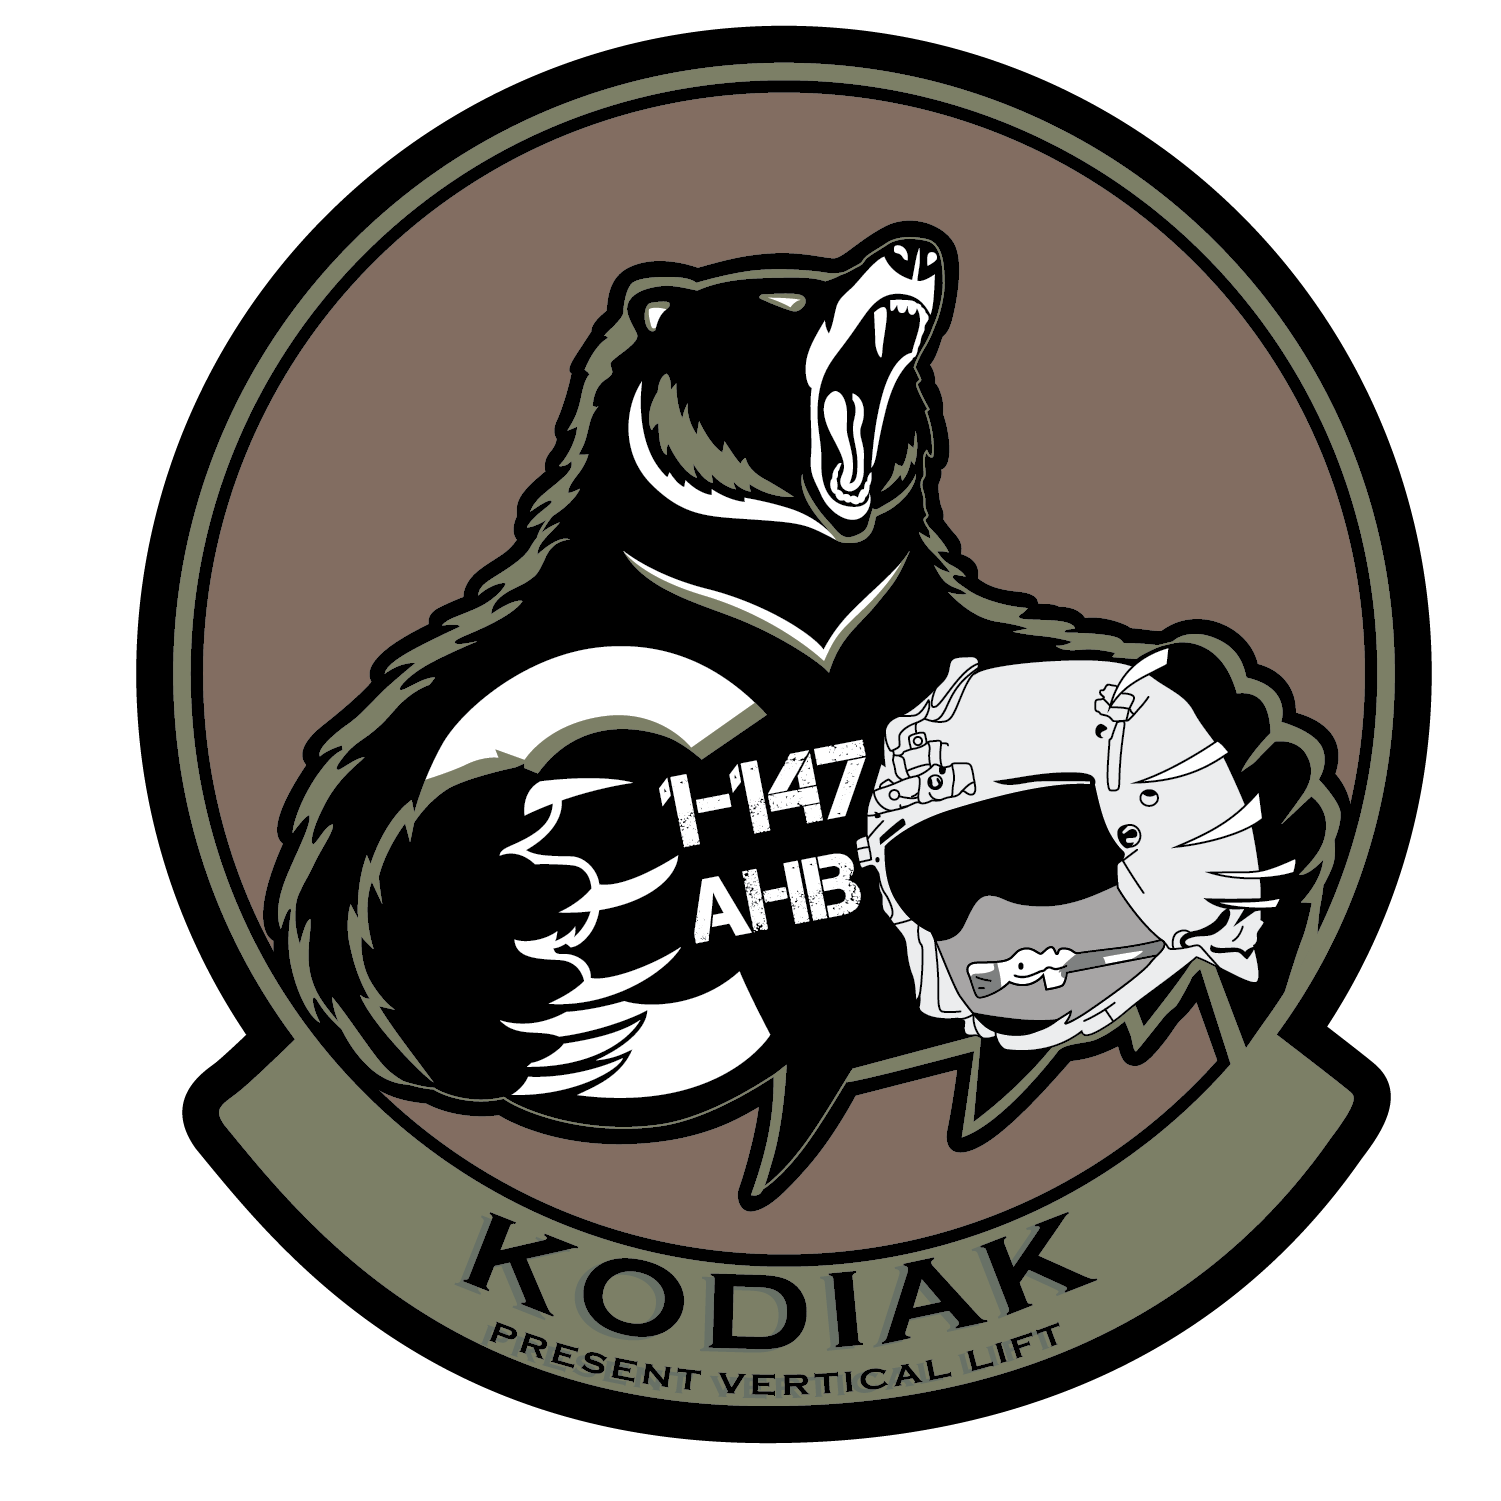 C Co, 1-147 AHB "Kodiak"